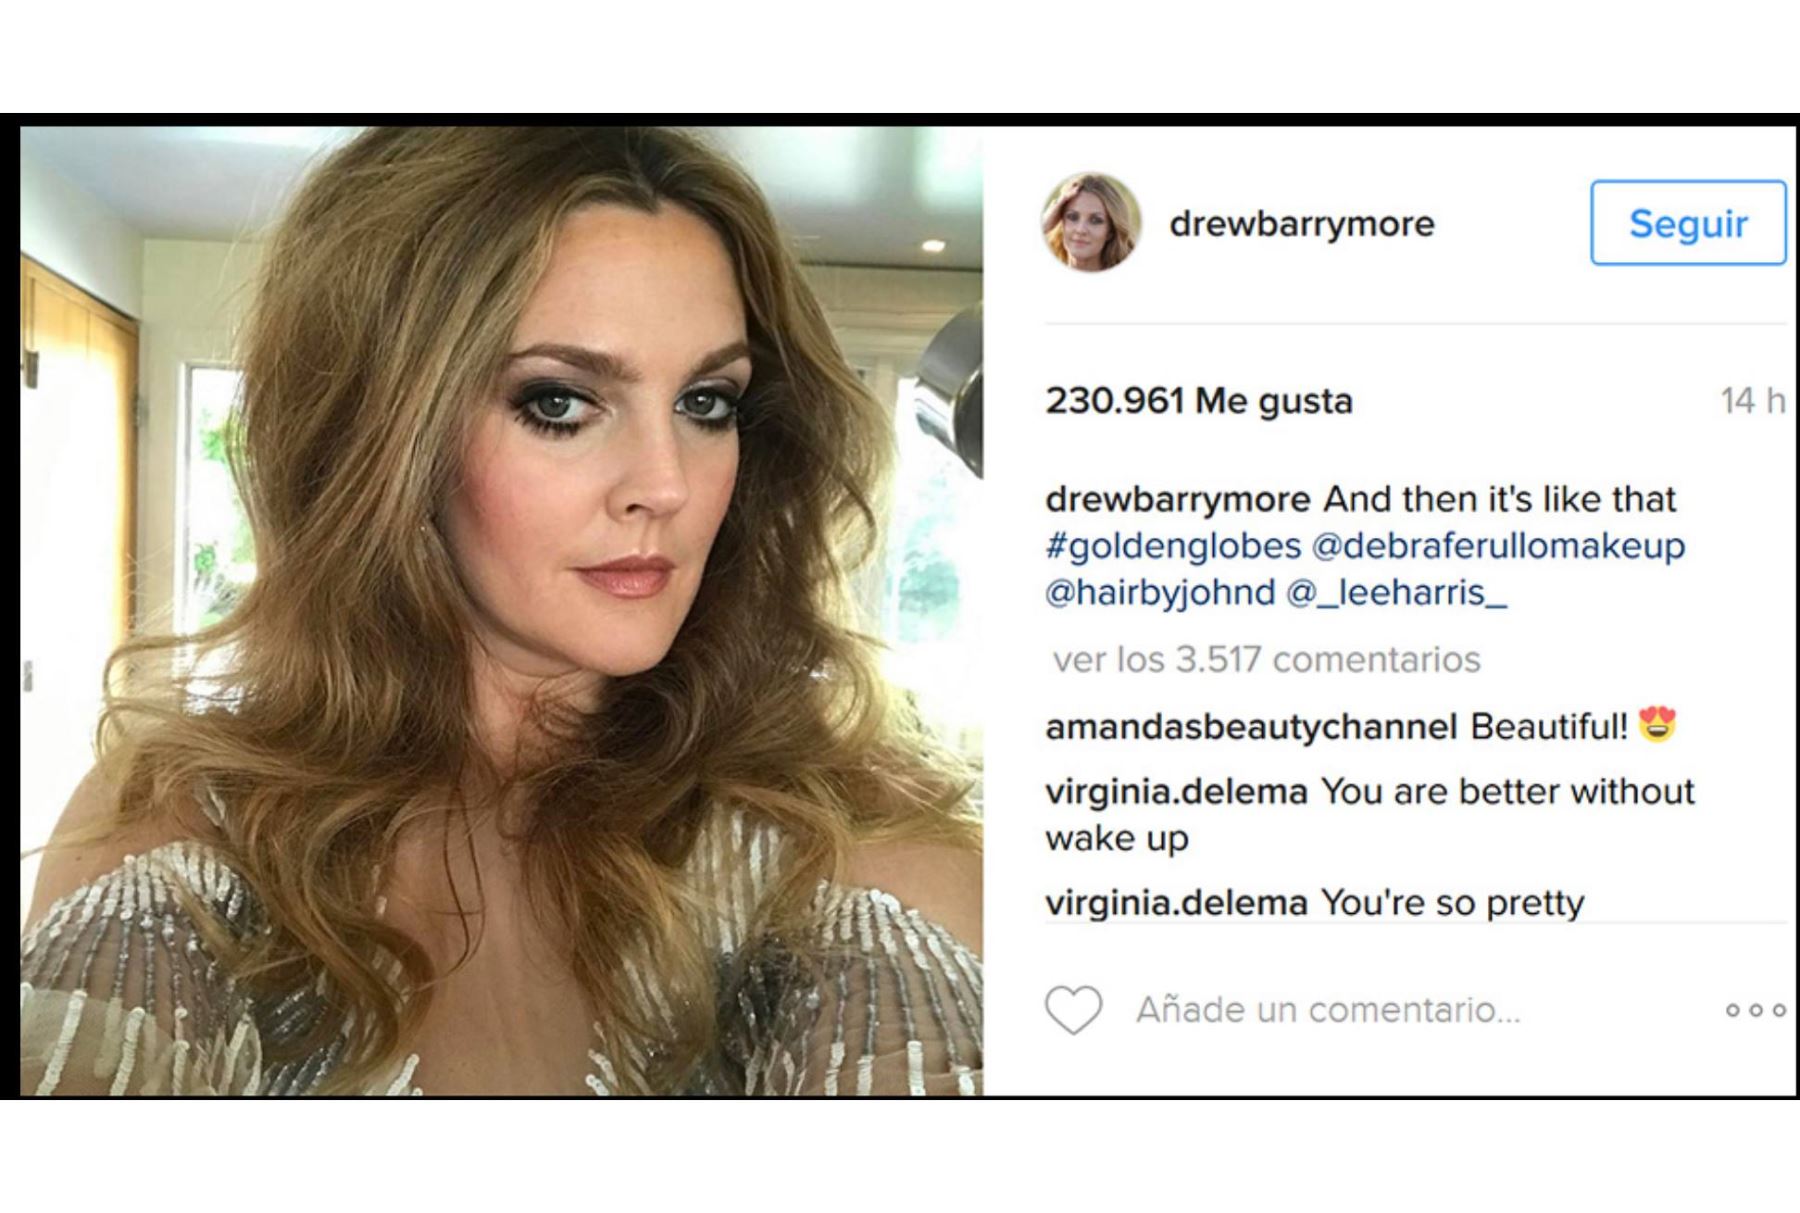 Drew Barrymore muestra cómo lucirá en los Globos de Oro tras intenso maquillaje.